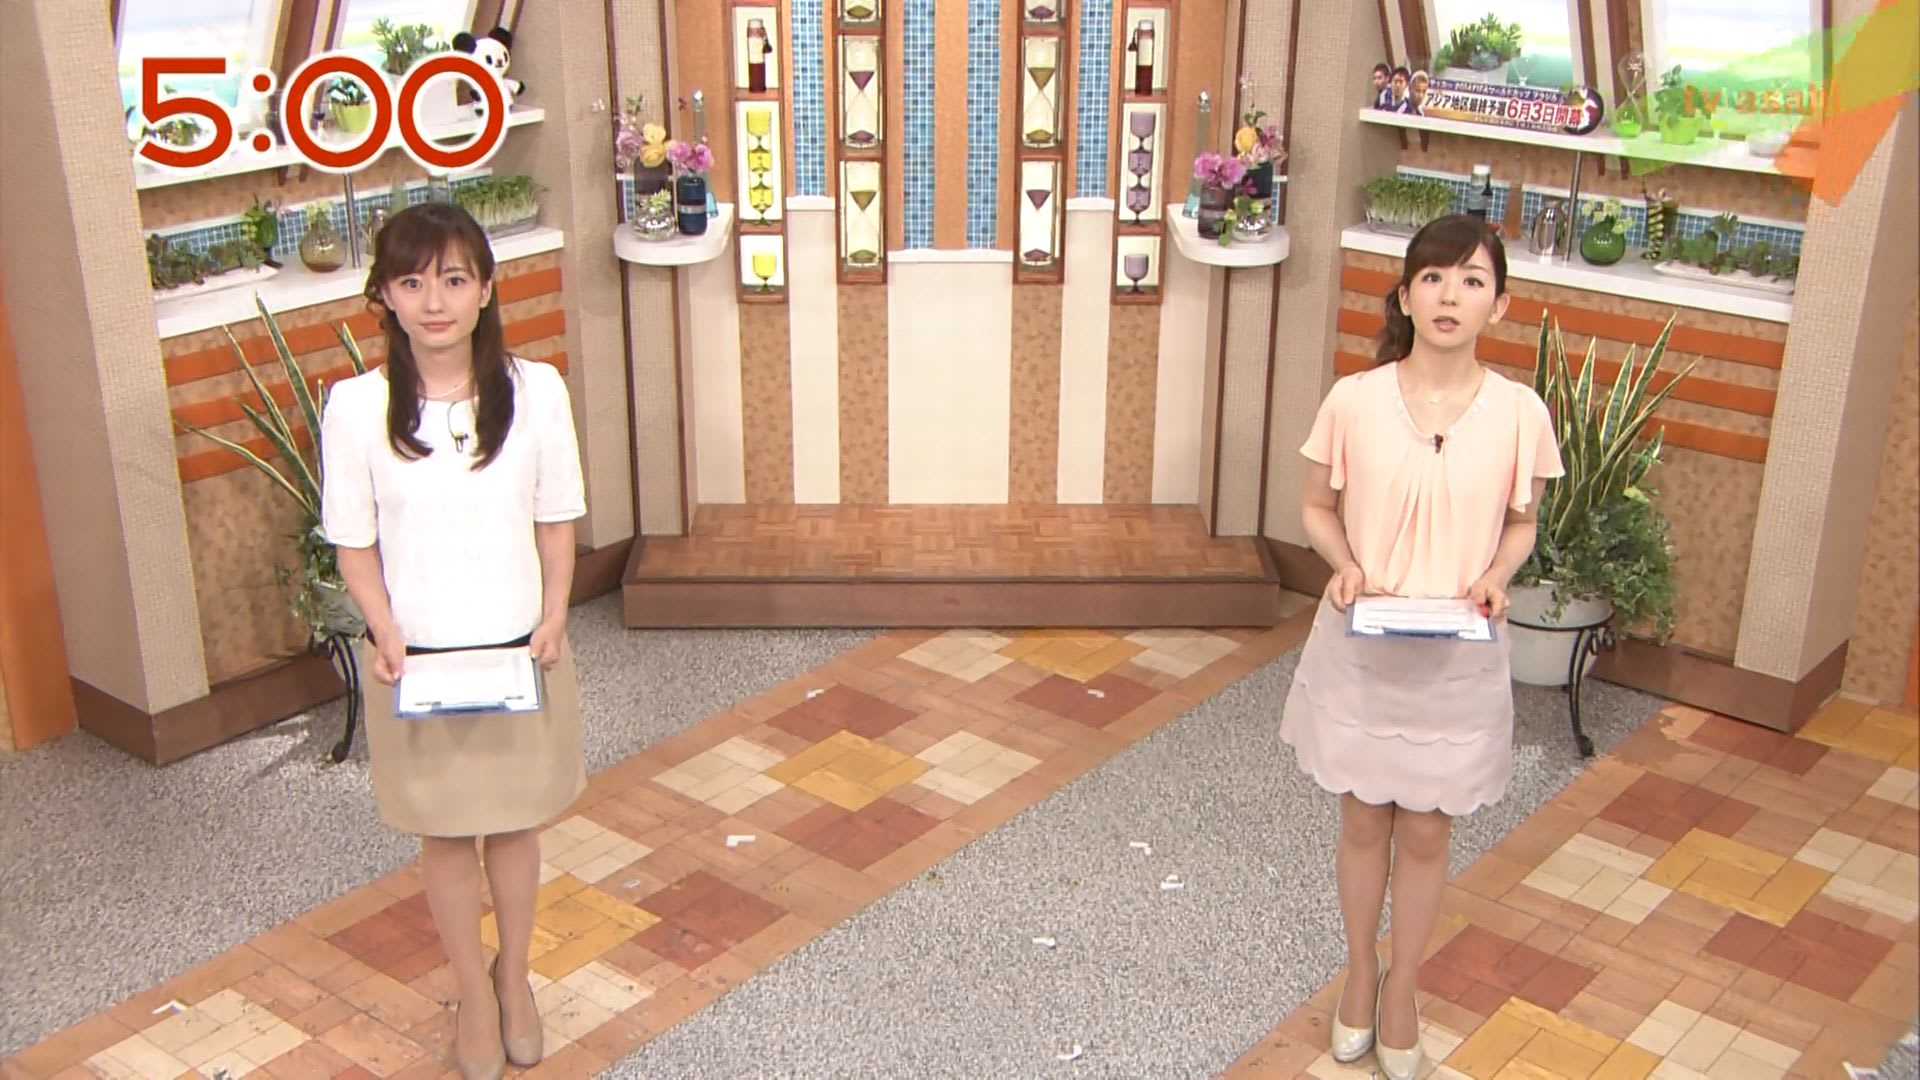 松尾由美子 やじうまテレビ 12 05 17 女子アナキャプでも貼っておく